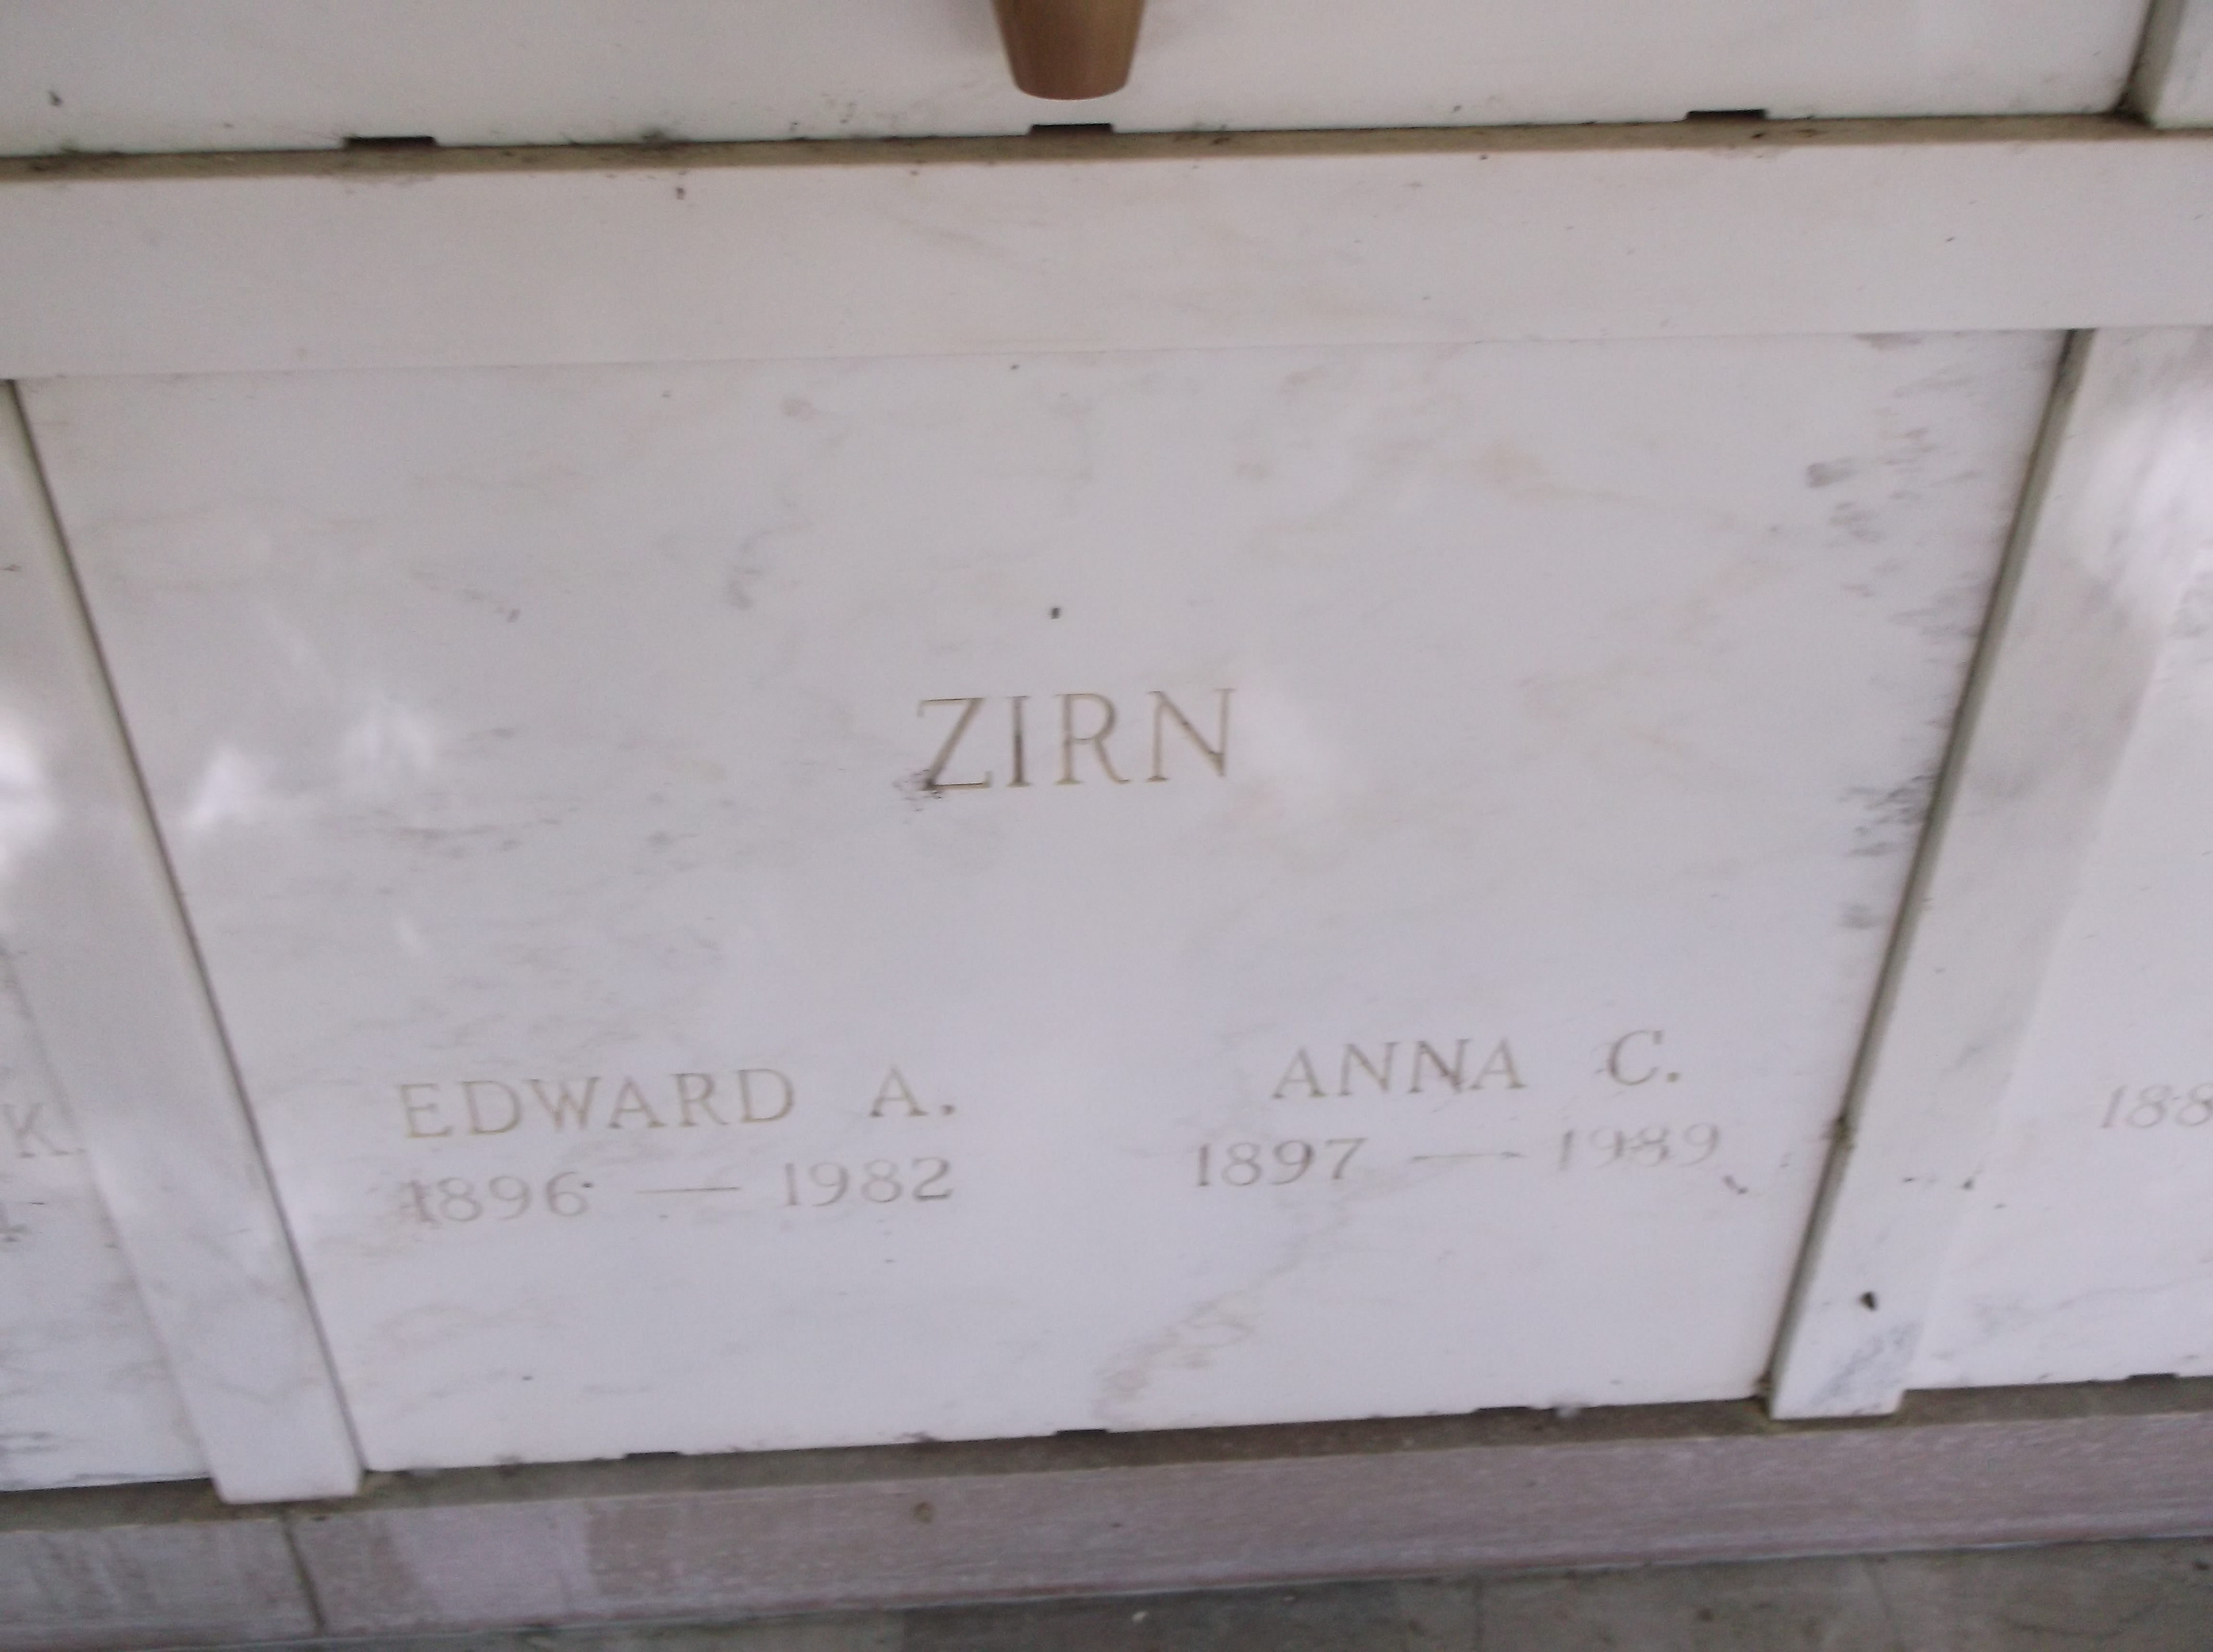 Edward A Zirn